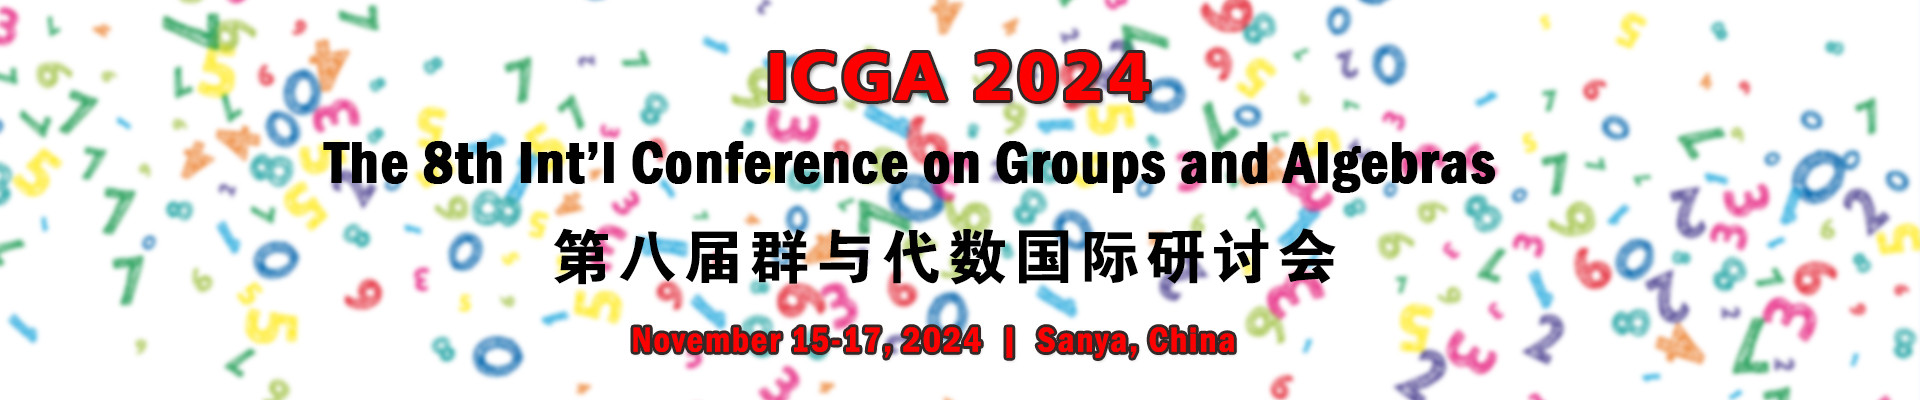 第八届群与代数国际研讨会(ICGA 2024)